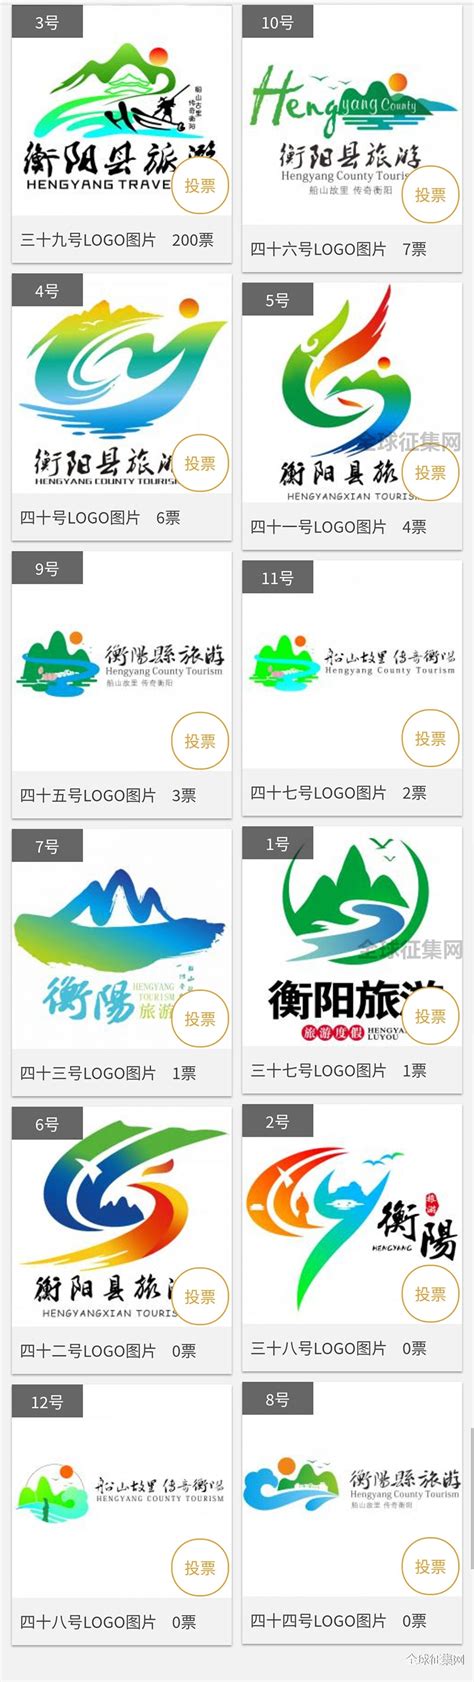 衡阳县旅游形象宣传标志网络评选活动（第四组）开始了-设计揭晓-设计大赛网